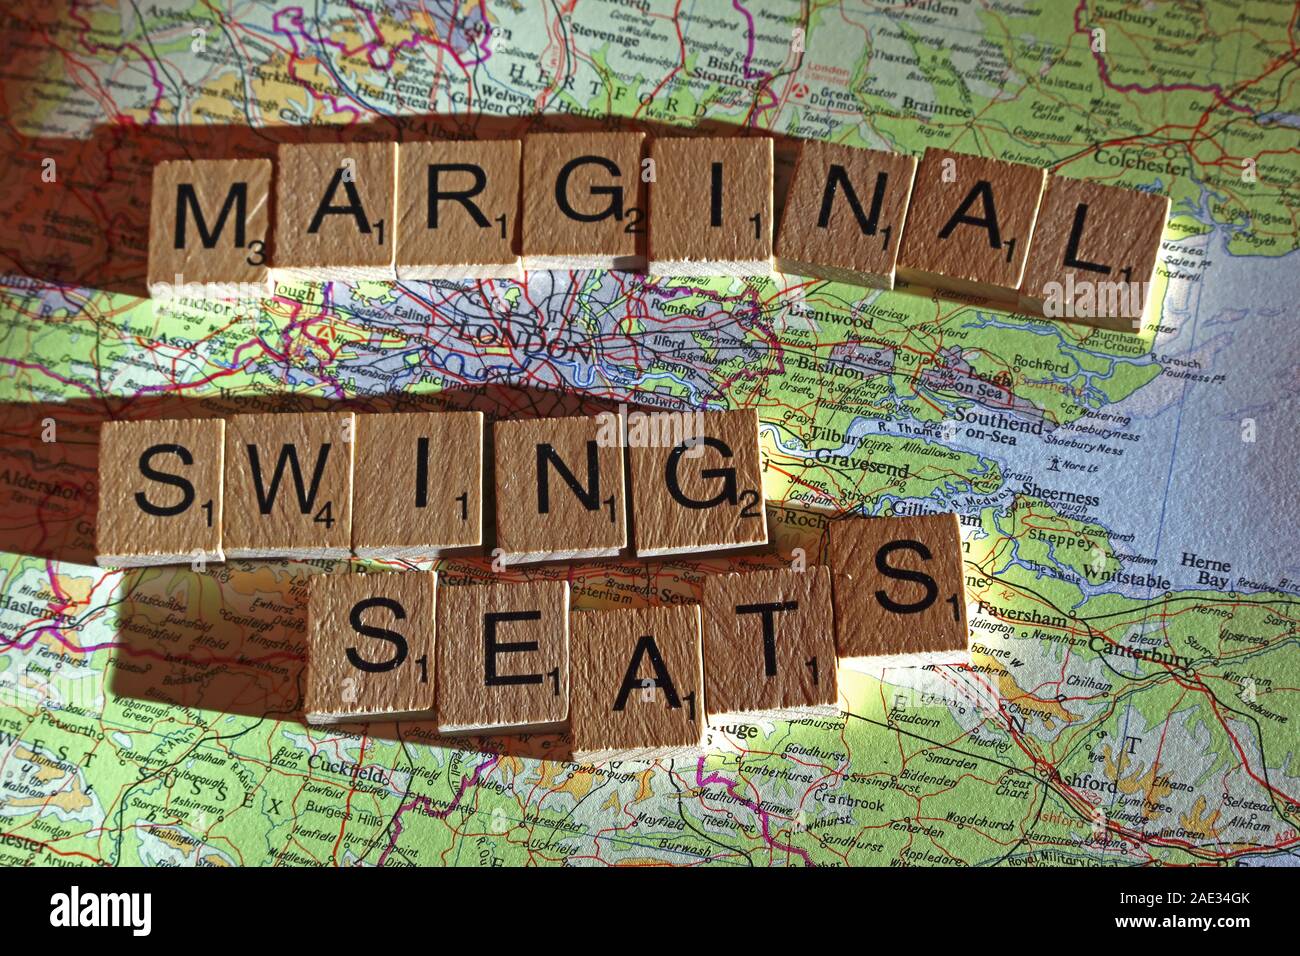 Balancelles marginal en épeautre lettres Scrabble sur une carte du Royaume-Uni - Générale, élections, partis politiques dirigeants,parties,demandes,des doutes, Banque D'Images